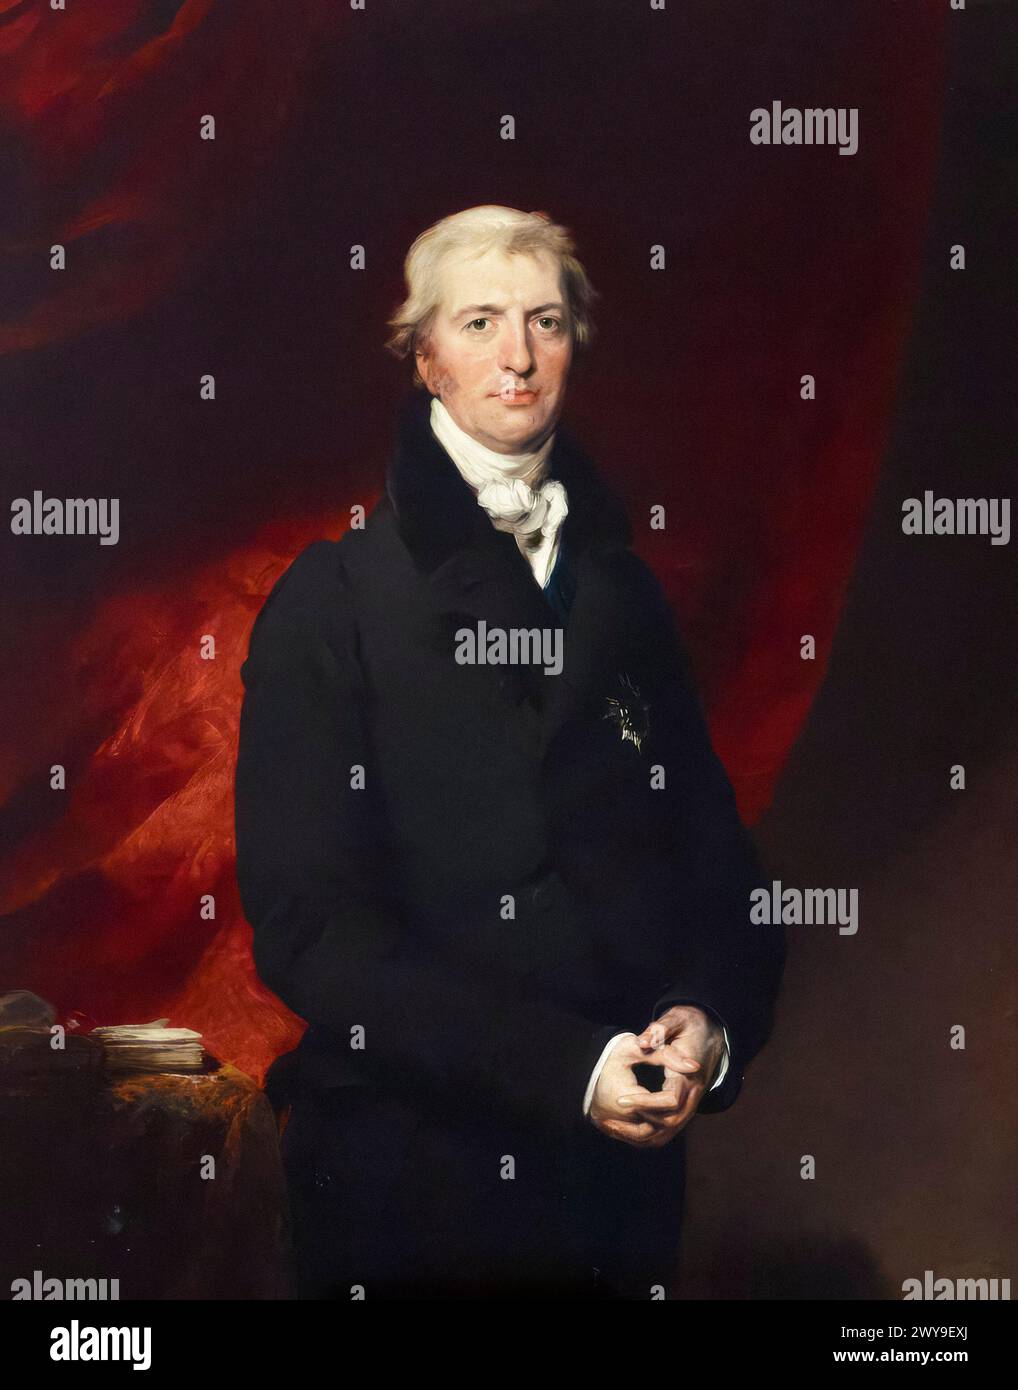 Robert Jenkinson, 2e comte de Liverpool (1770-1828), homme politique conservateur et premier ministre du Royaume-Uni de 1812 à 1827, portrait peint à l'huile sur toile par Sir Thomas Lawrence, vers 1828 Banque D'Images